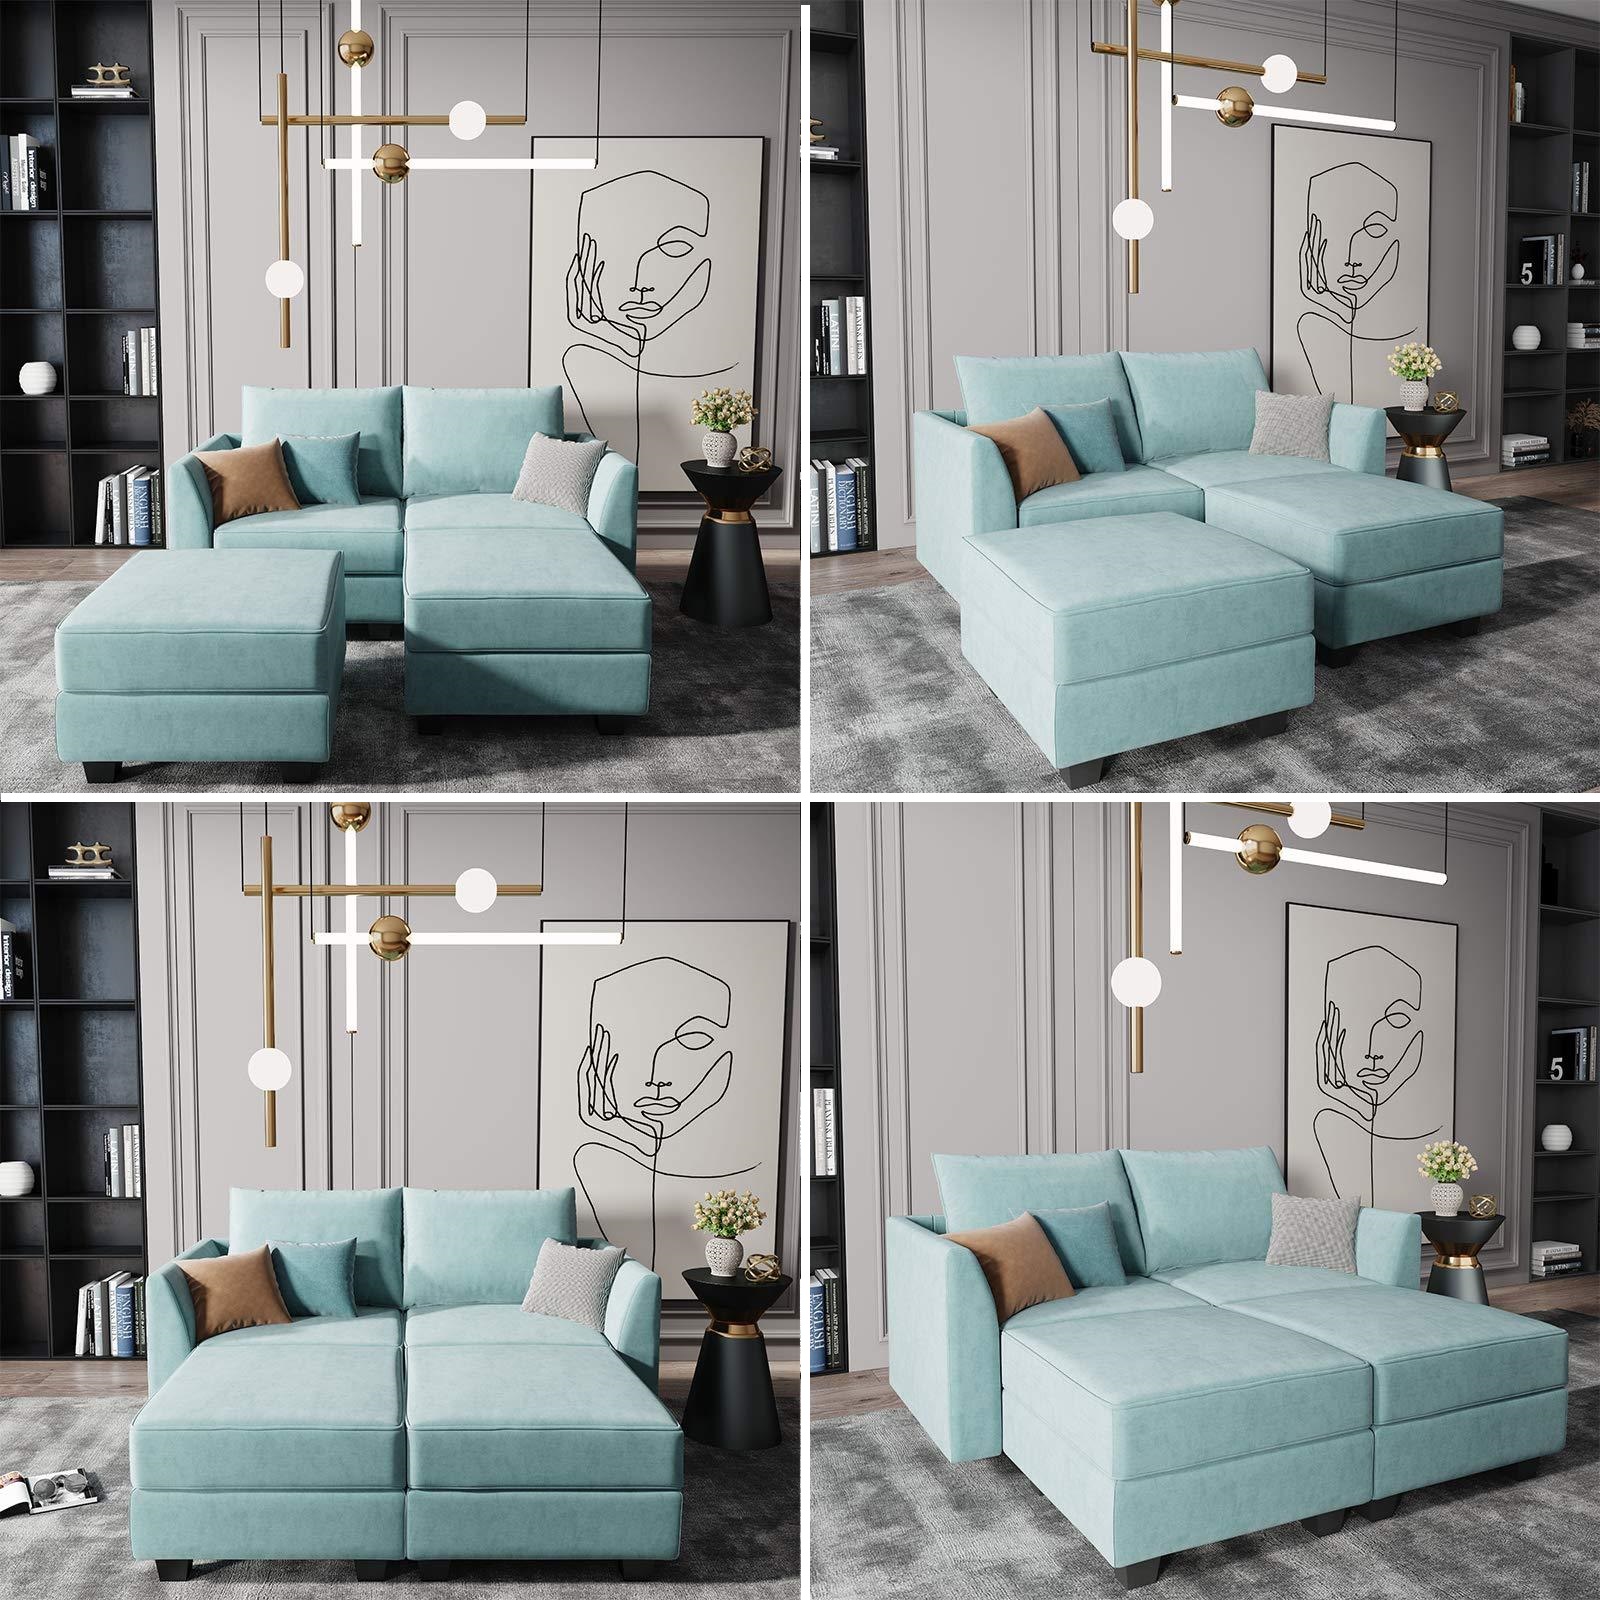 Đối với những căn hộ diện tích nhỏ, gác xép hay bất cứ không gian 'khiêm tốn' nào thì thiết kế này sẽ là giải pháp hoàn hảo khi chọn nội thất. Đệm sofa màu xanh ngọc lam mềm mại nhưng chắc chắn, ngăn cảm giác bị lún. Nhờ thiết kế module tùy chỉnh, người dùng có thể tạo ra sofa đôi với ghế phụ, bàn nước hoặc tạo thành chiếc giường êm ái.